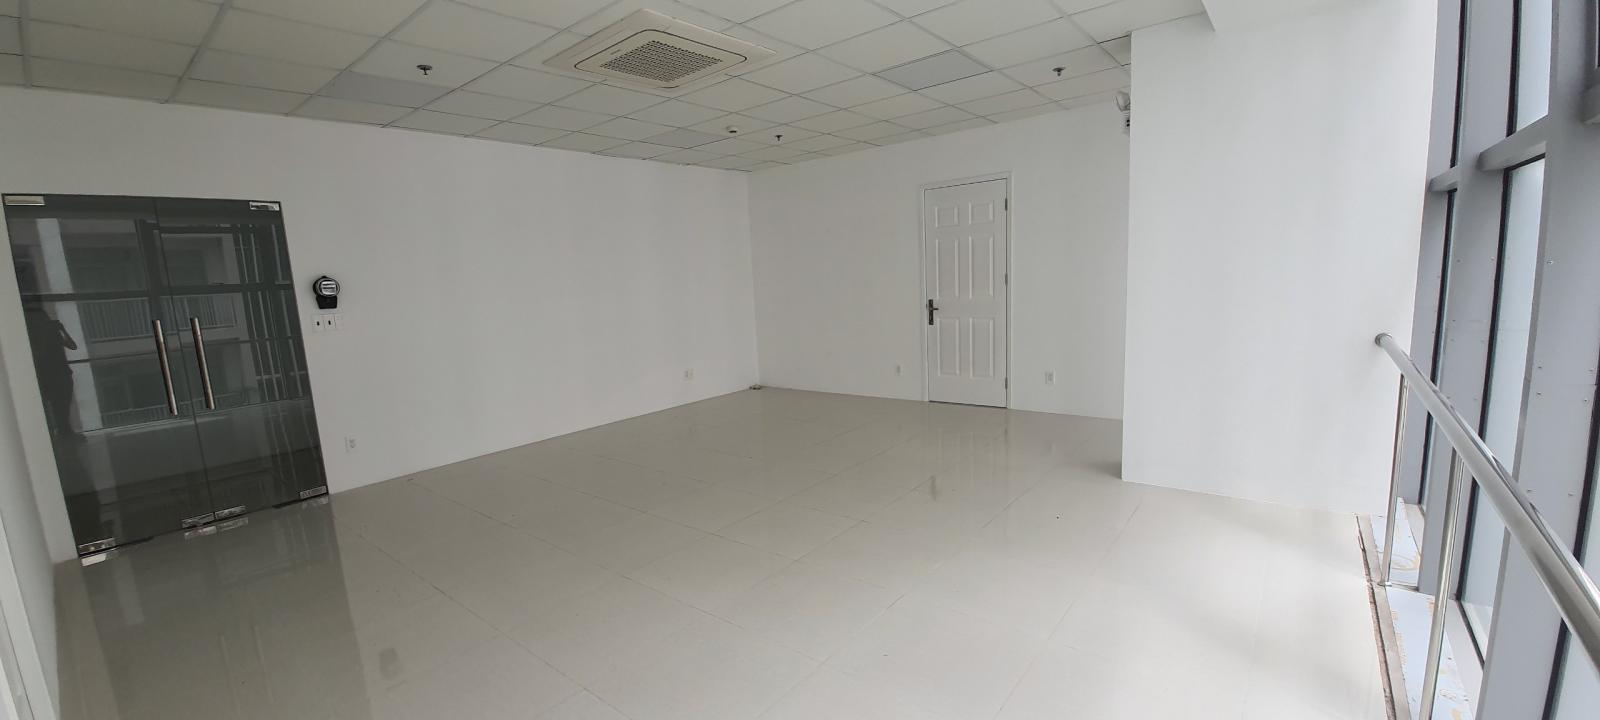 Văn phòng 107m² cho thuê tại Q7. Lh 0868.920.928 Lê Anh